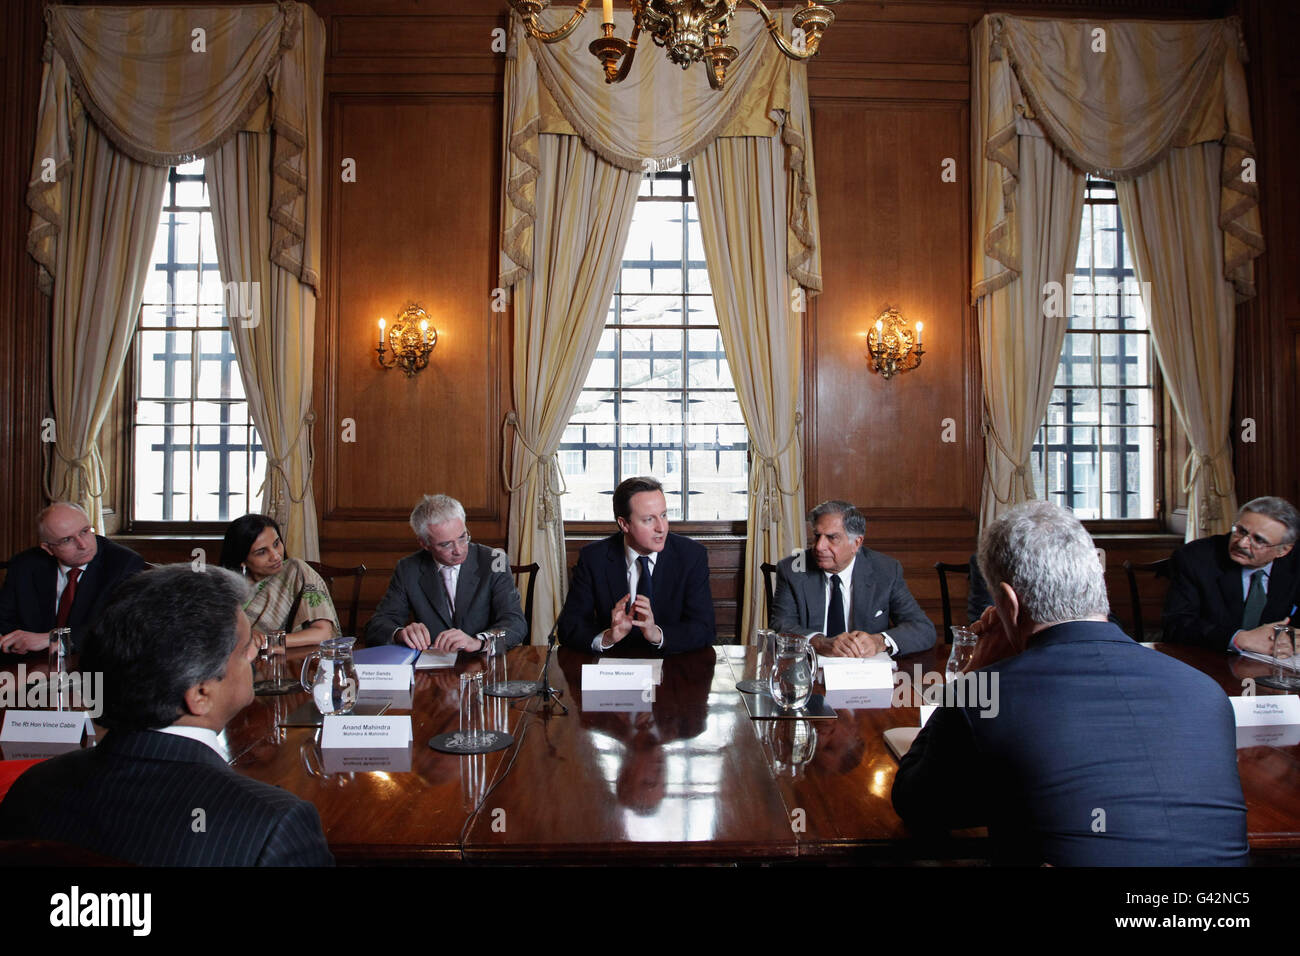 Le Premier ministre David Cameron (au centre) préside une réunion du « UK-India CEO Forum », au 10 Downing Street, Londres.La réunion d'affaires a été présidée conjointement par le PDG de Standard Chartered, Peter Sands (centre, à gauche), et le PDG de TATA, Ratan Tata (centre, à droite) et est le premier des forums de PDG Royaume-Uni-Inde à avoir lieu.APPUYEZ SUR ASSOCIATION photo.Date de la photo : jeudi 3 février 2011.Le crédit photo devrait se lire comme suit : Dan Kitwood/PA Wire Banque D'Images